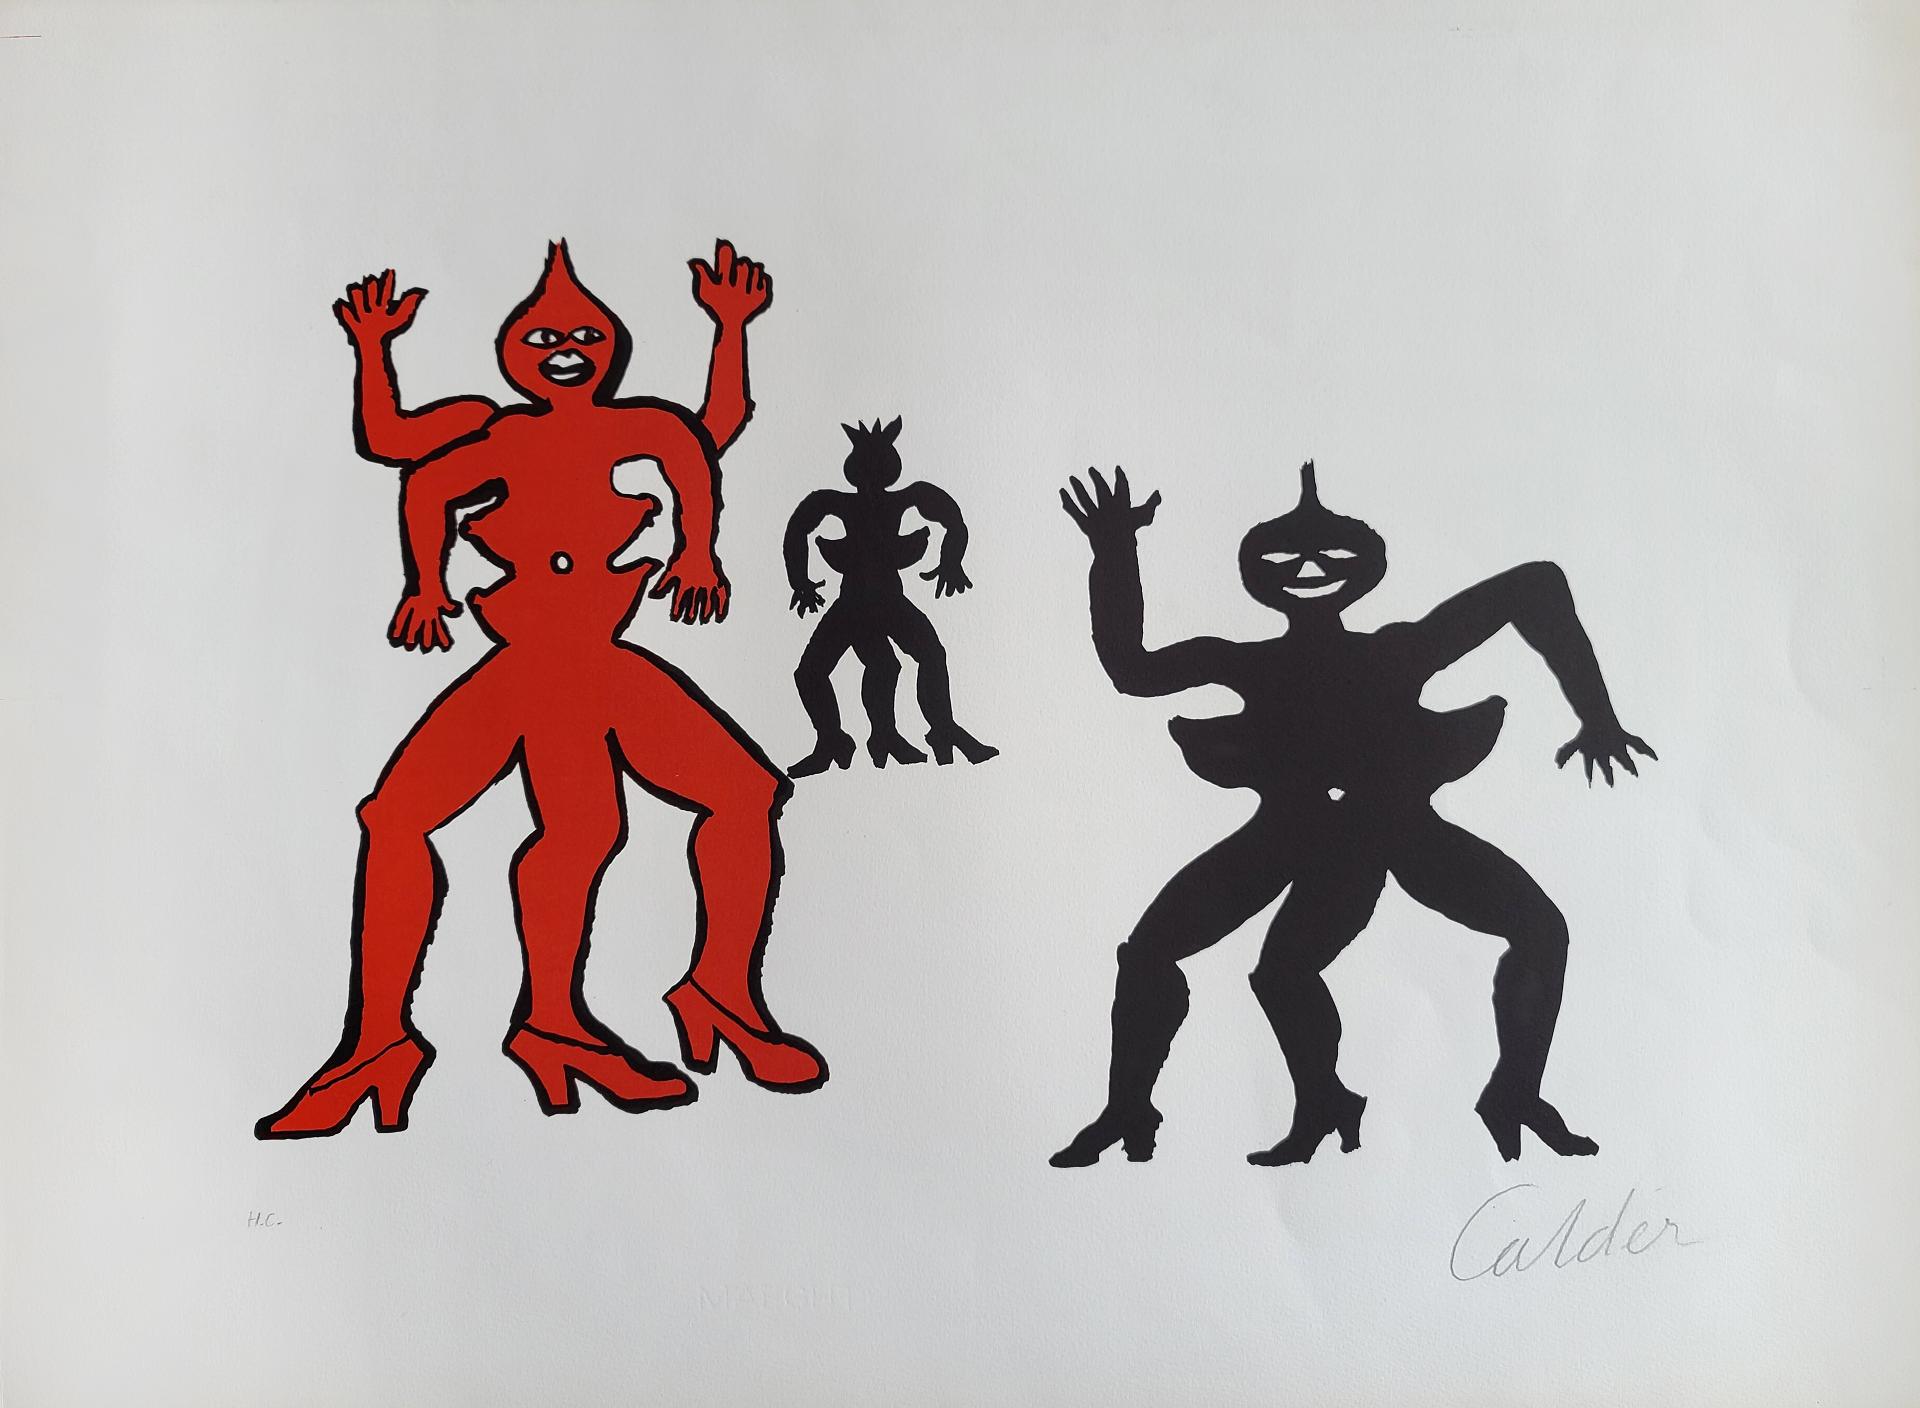 Alexander Calder (1898-1976) - Une famille de là-bas, 1975